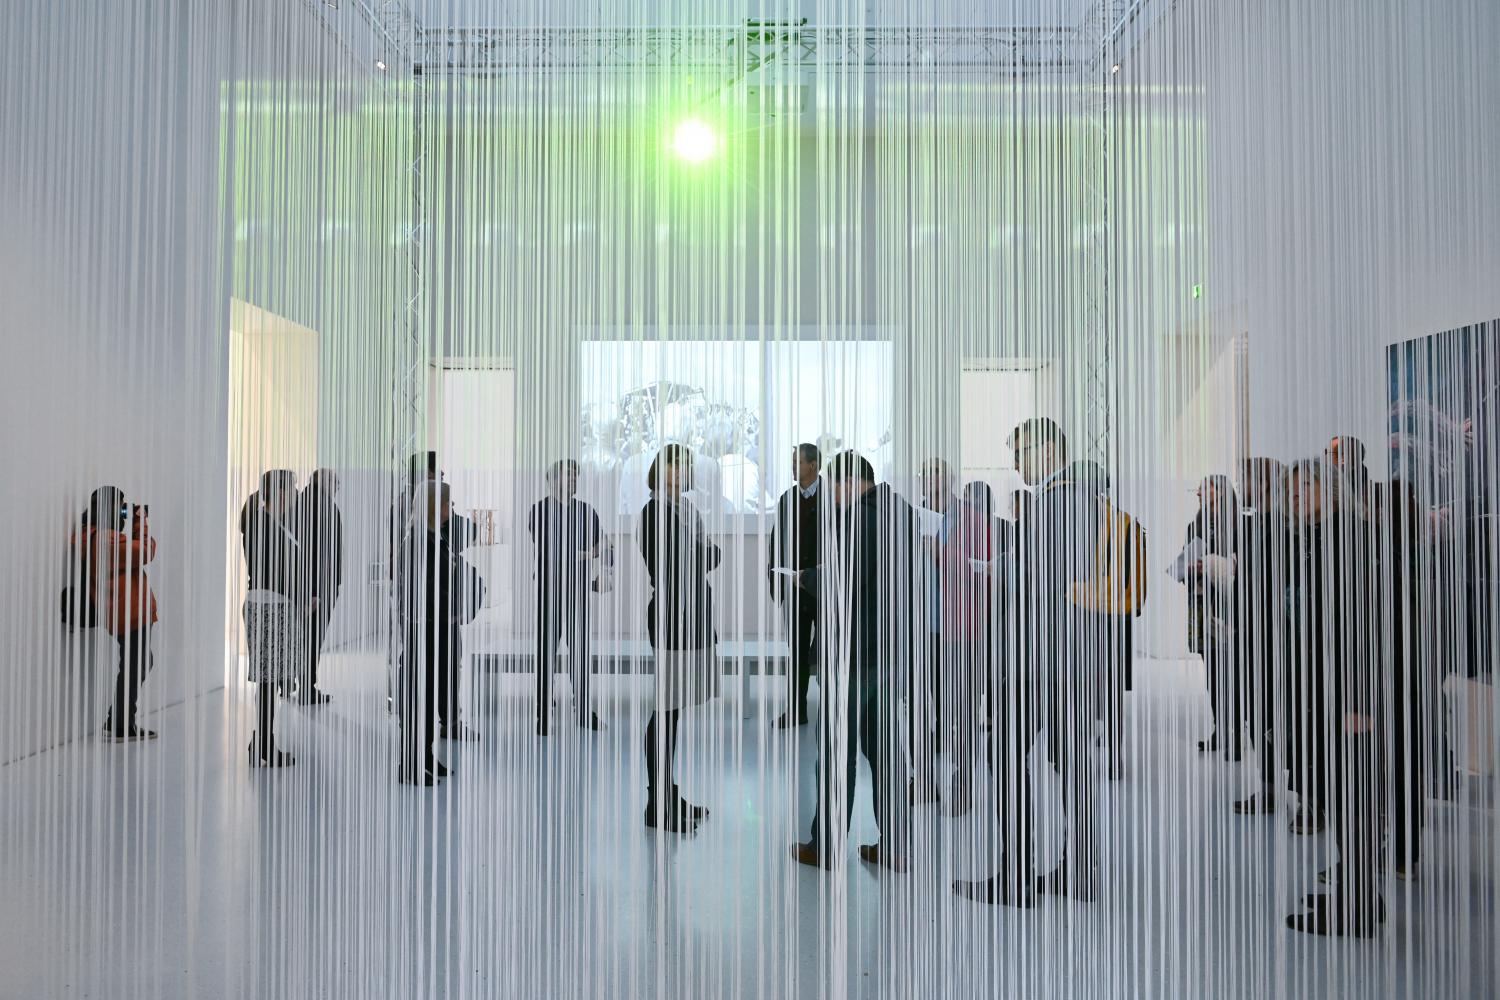 Neue Dauerausstellung "About: Documenta", Neue Galerie, Kassel